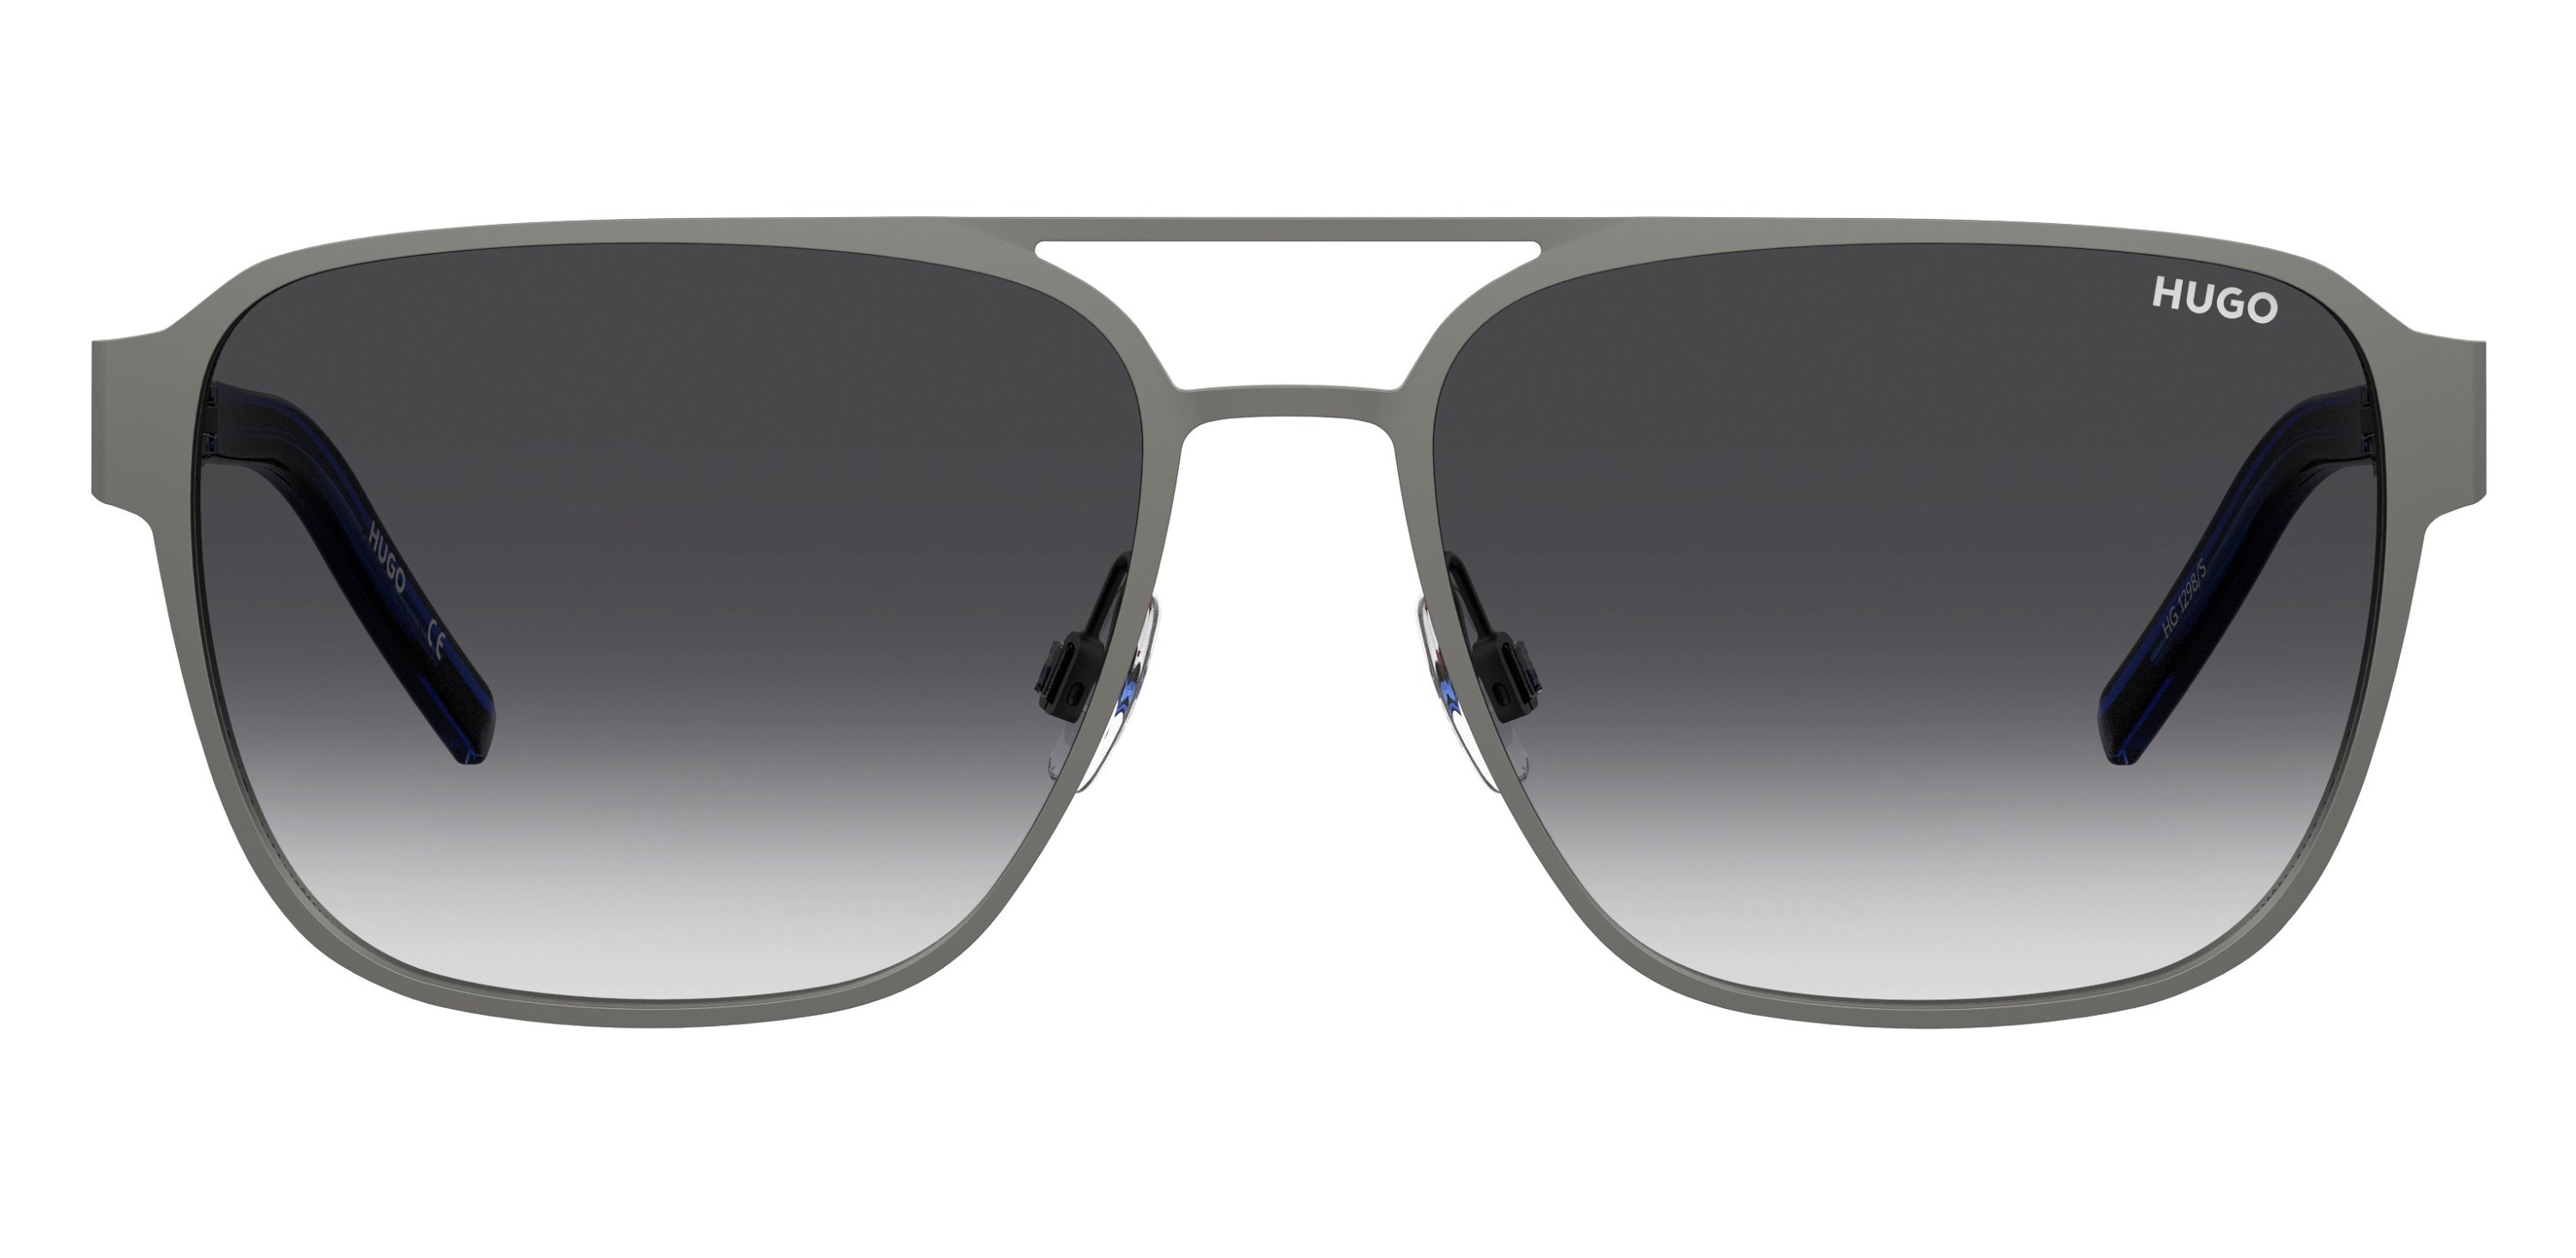 Das Bild zeigt die Sonnenbrille HG1298/S D51 von der Marke Hugo in blau/schwarz.